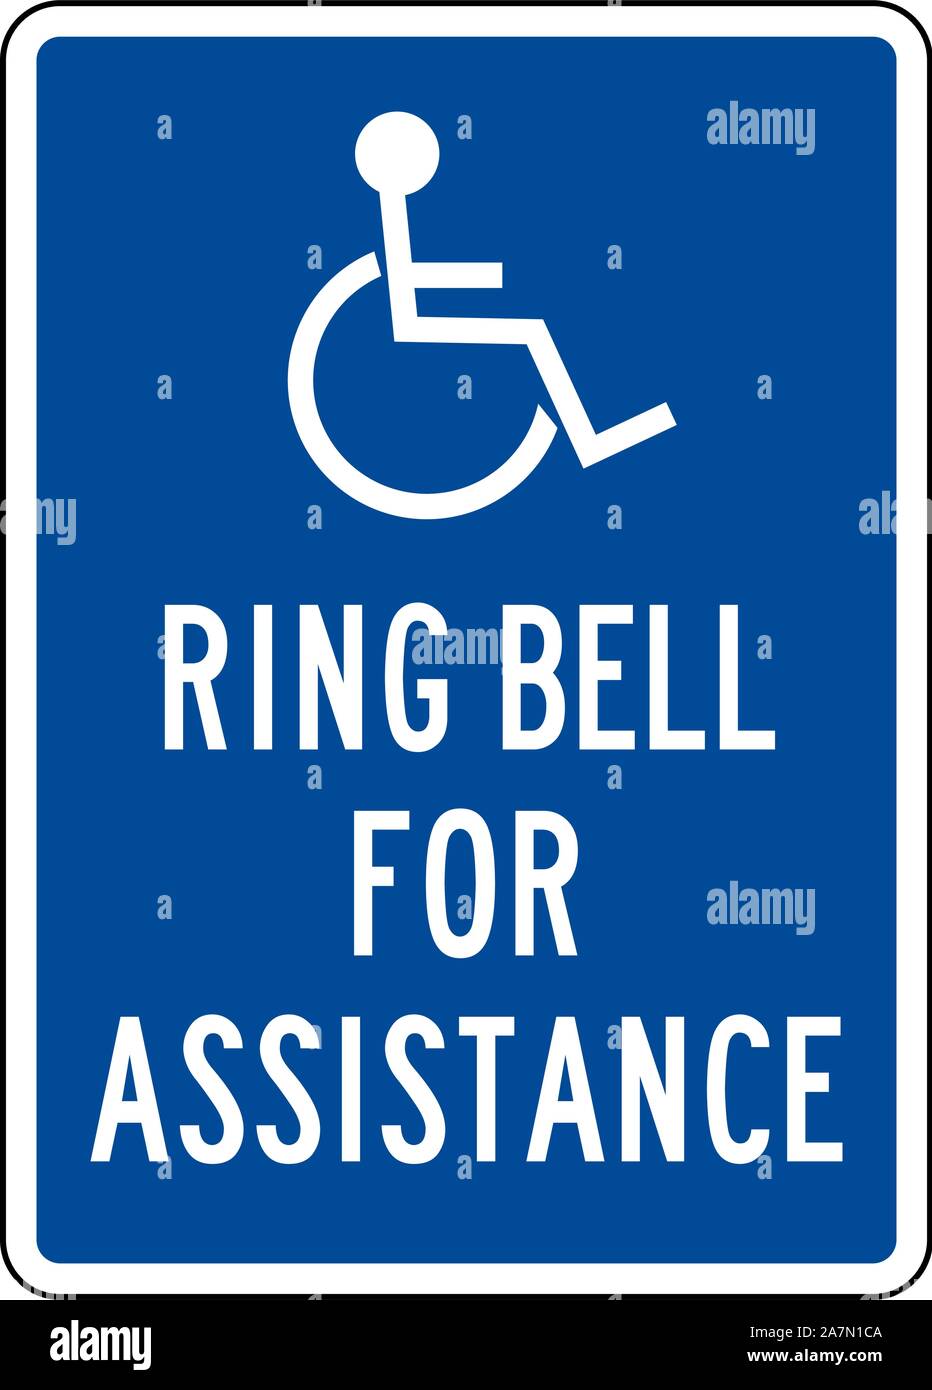 Klingel für Unterstützung oder Handicap Hilfe Anmelden Vector Illustration. Blau, Weiß. Krankenhaus Symbol. Stock Vektor